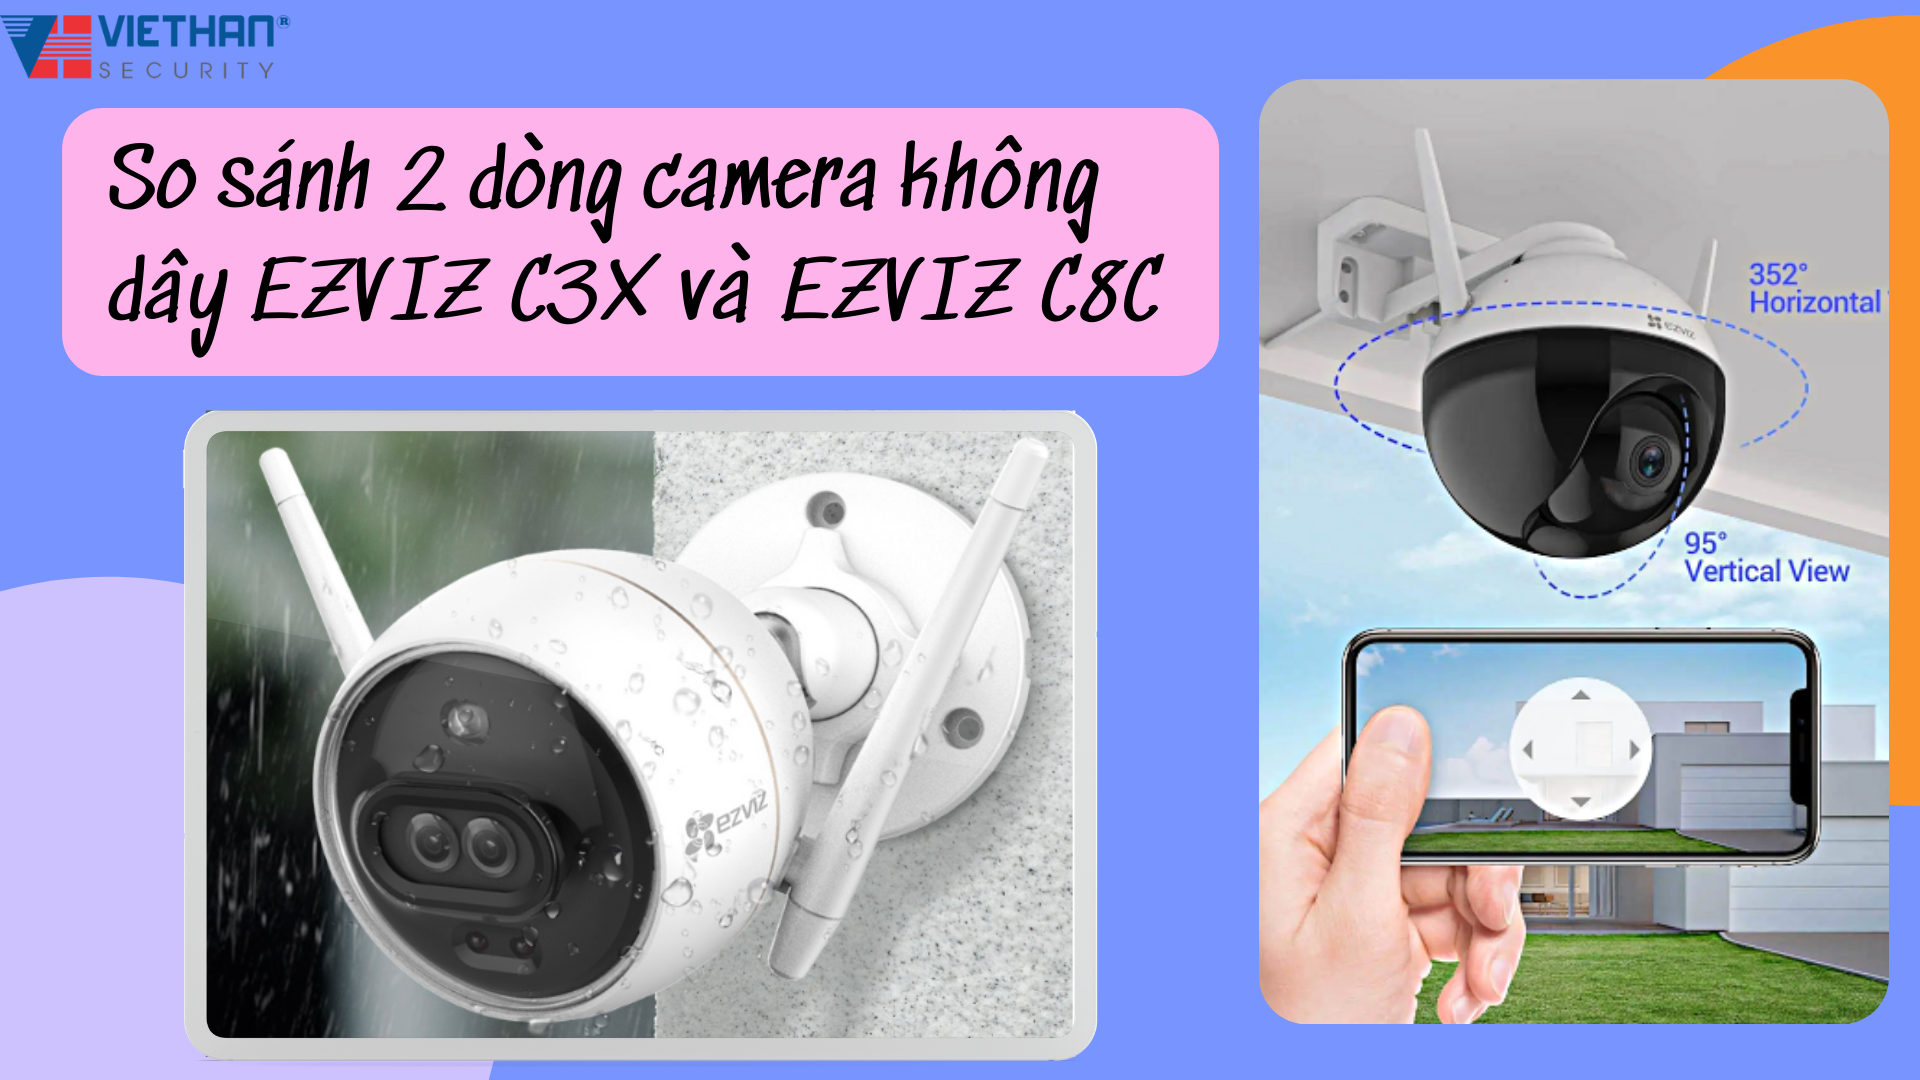 So sánh 2 dòng camera không dây EZVIZ C3X và EZVIZ C8C